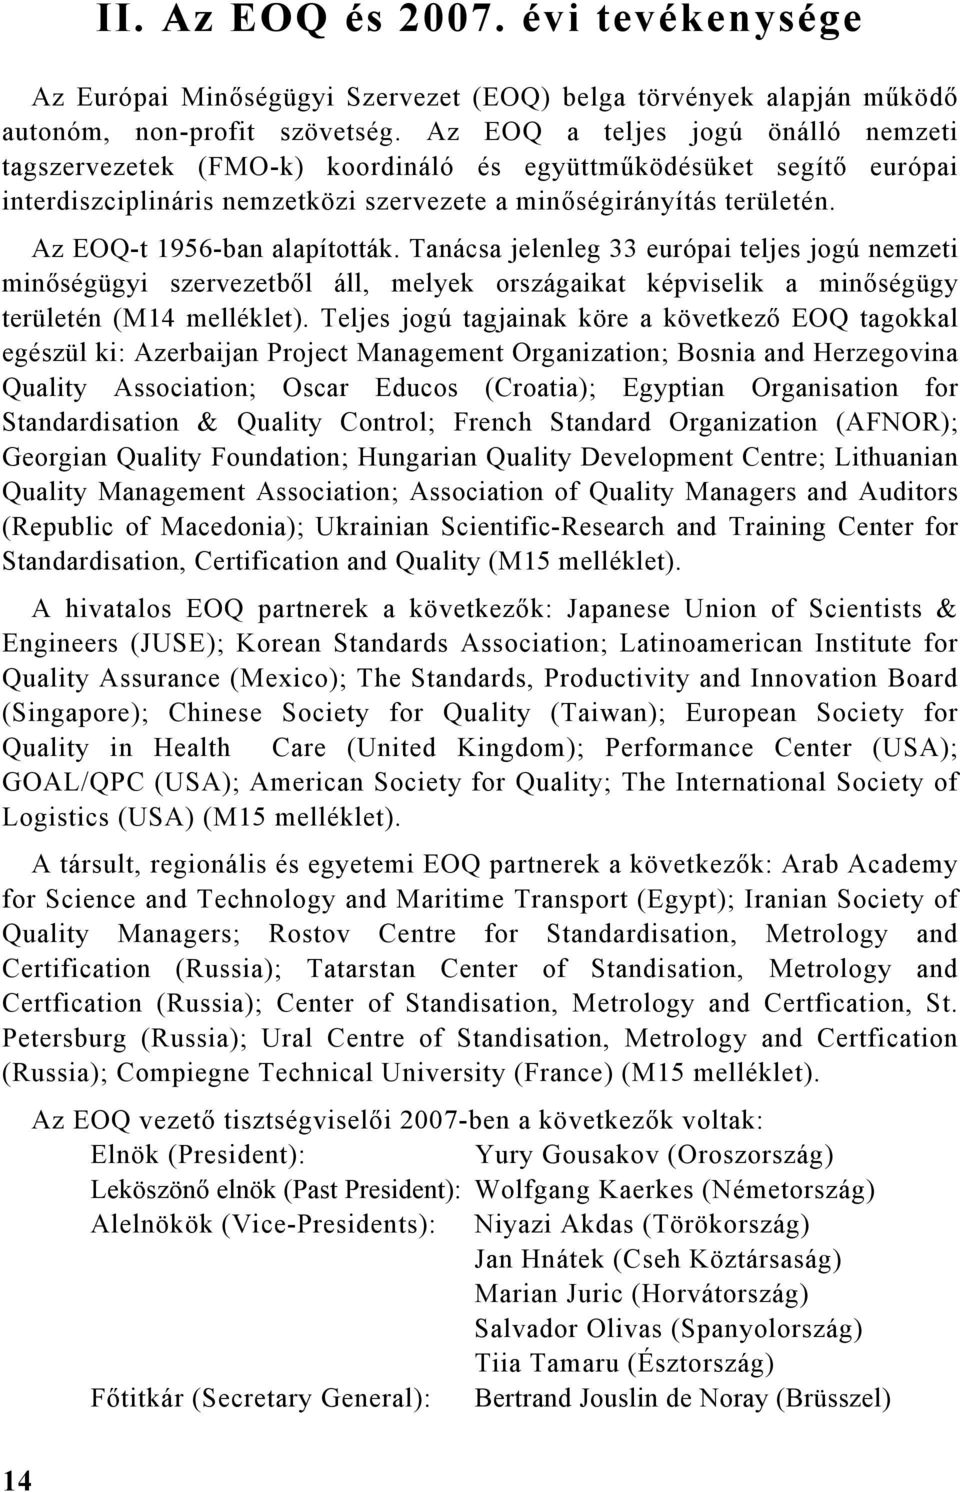 Az EOQ-t 1956-ban alapították. Tanácsa jelenleg 33 európai teljes jogú nemzeti minőségügyi szervezetből áll, melyek országaikat képviselik a minőségügy területén (M14 melléklet).